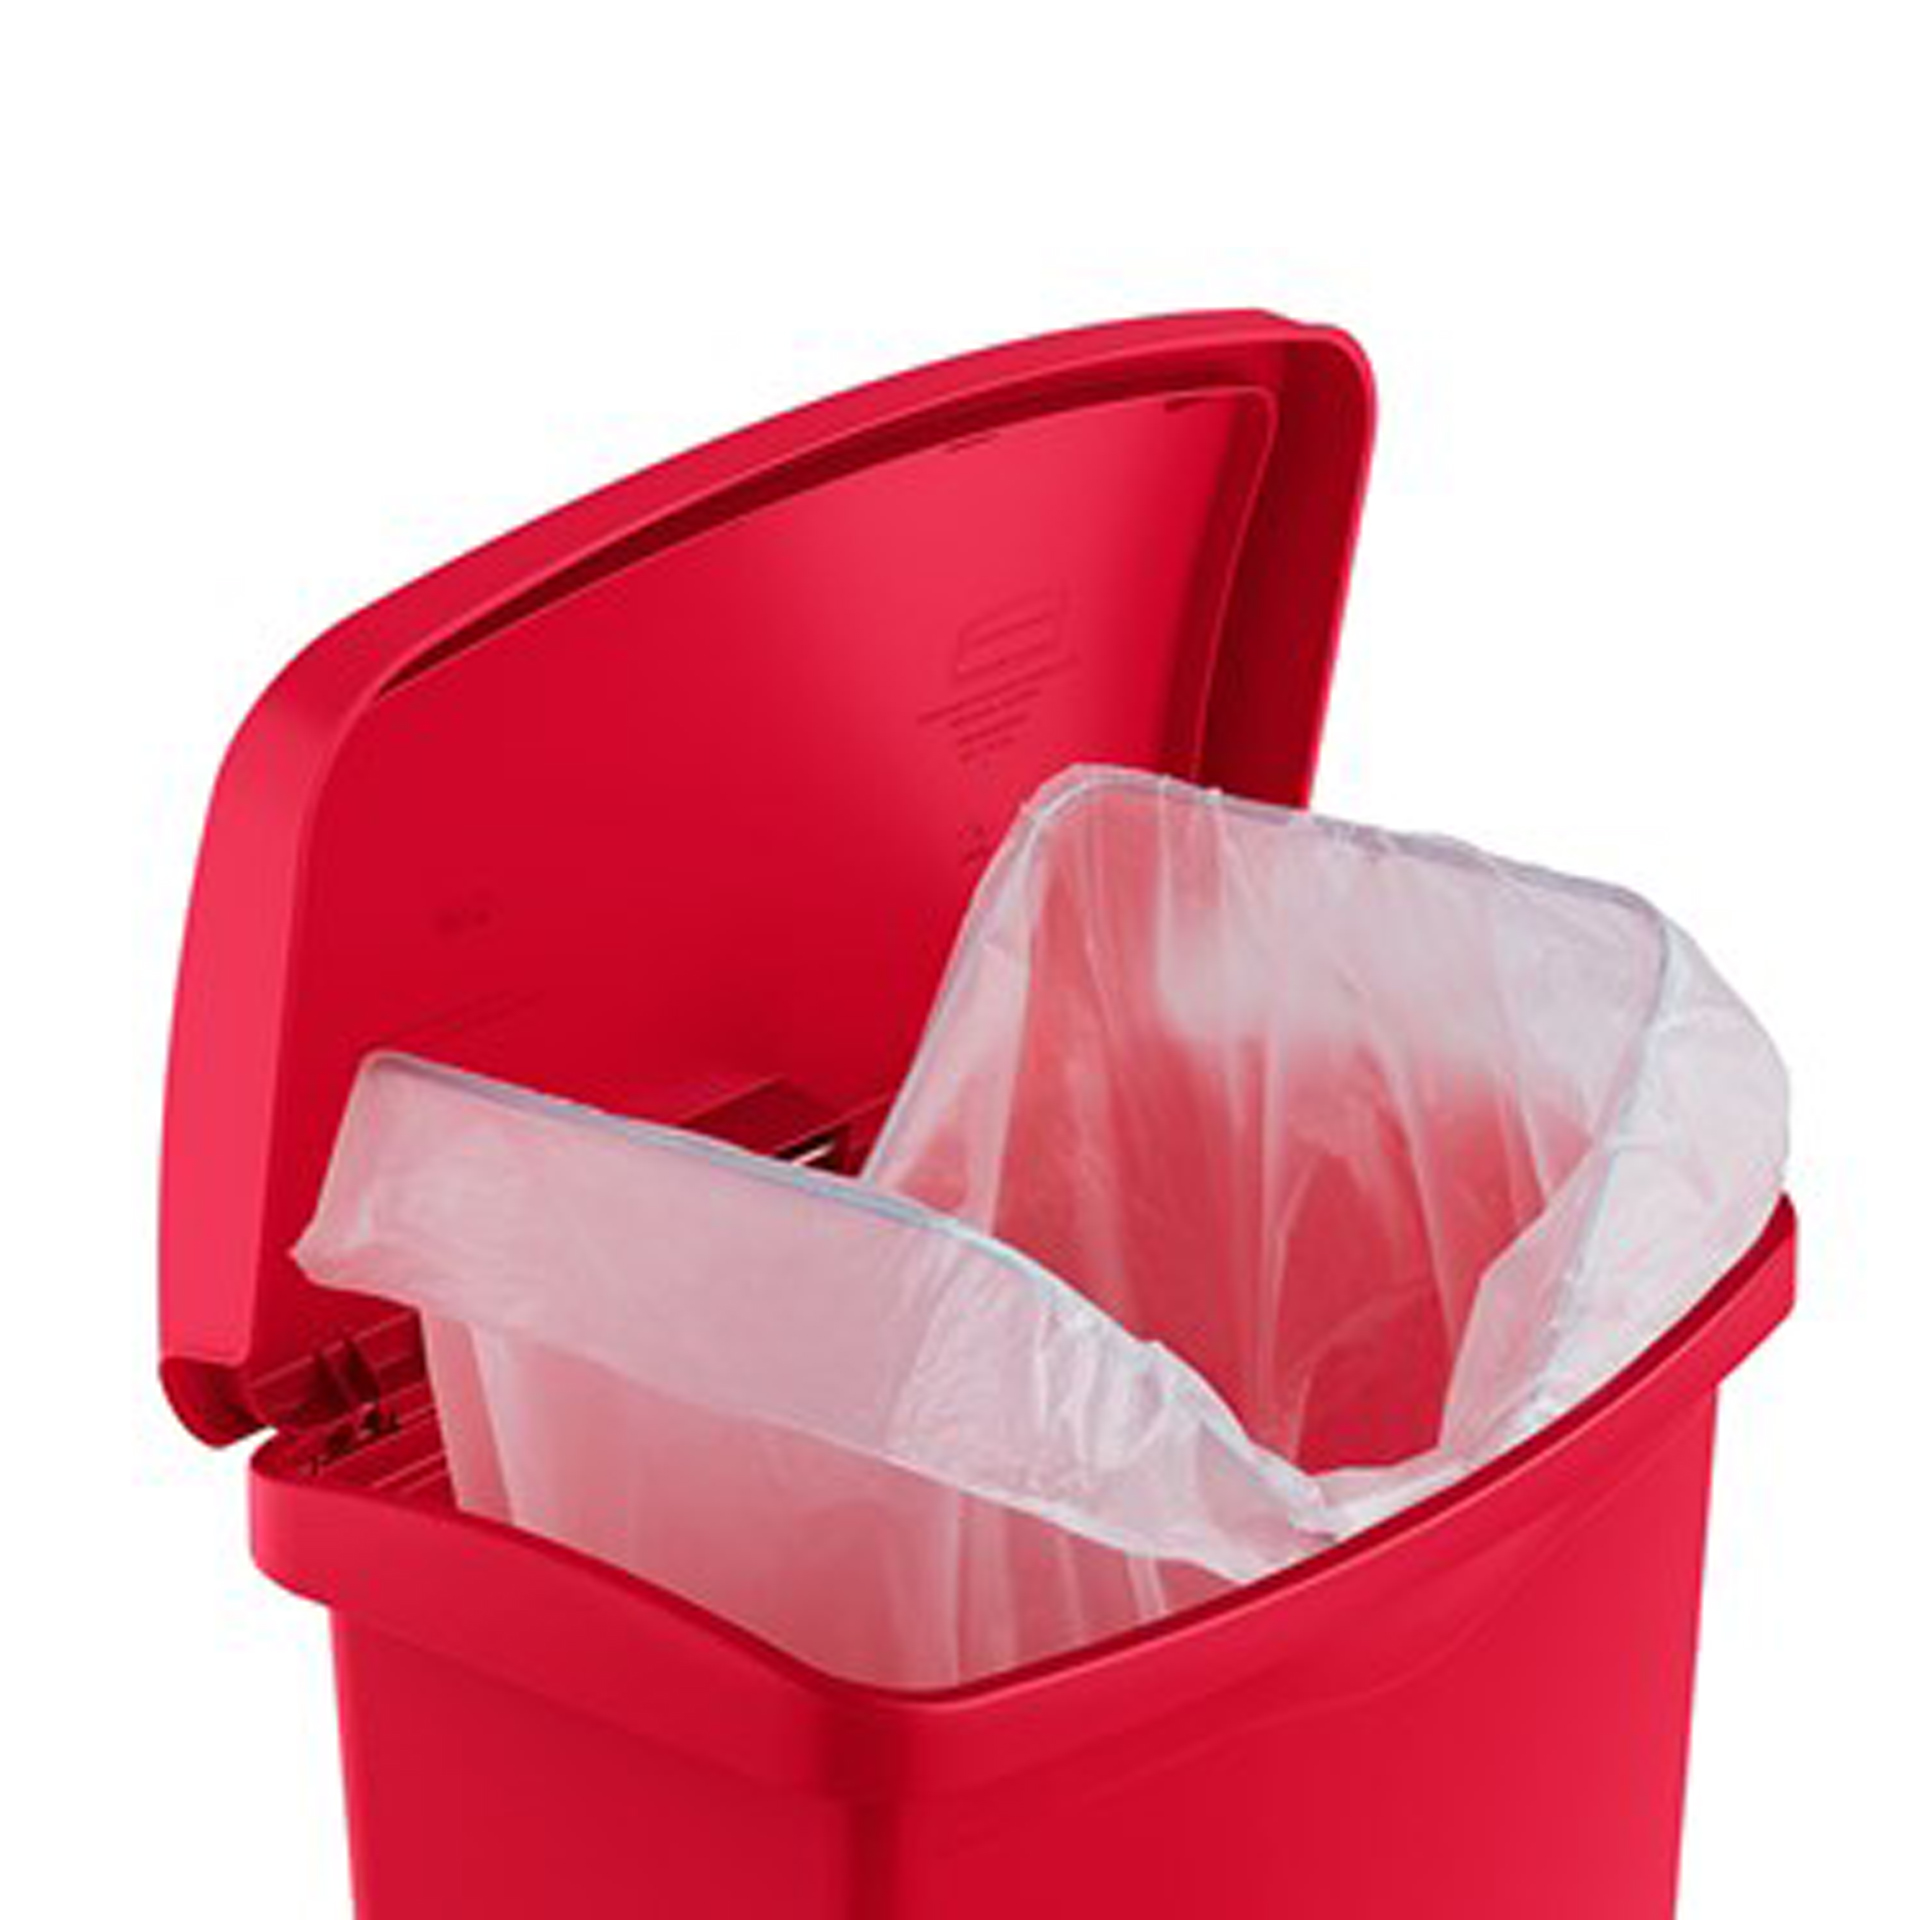 ถังขยะแบบเท้าเหยียบ Slim Jim® Step-On Container ขนาด 30 ลิตร สีแดง